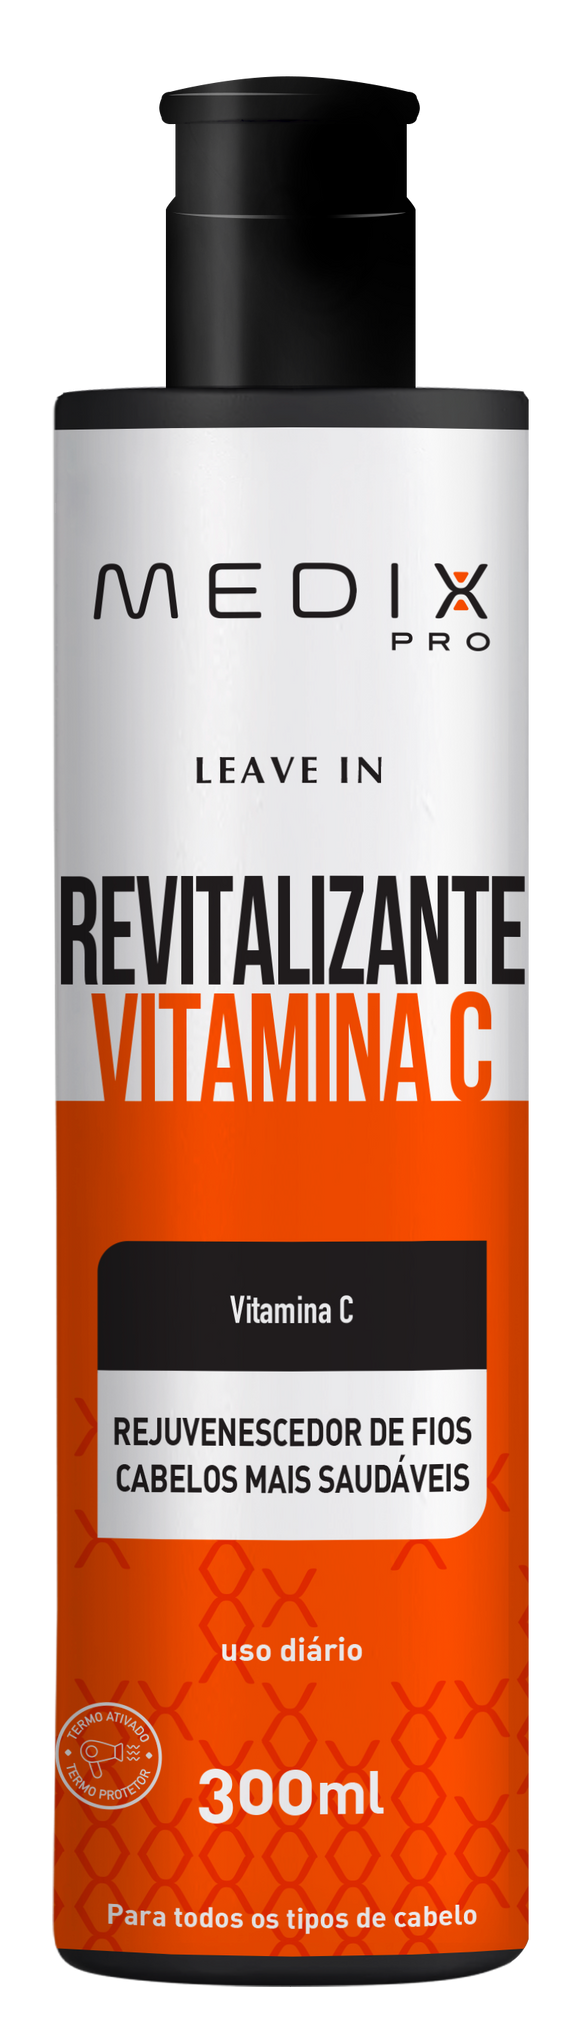 Leave in Revitalização Vitamina C Medix